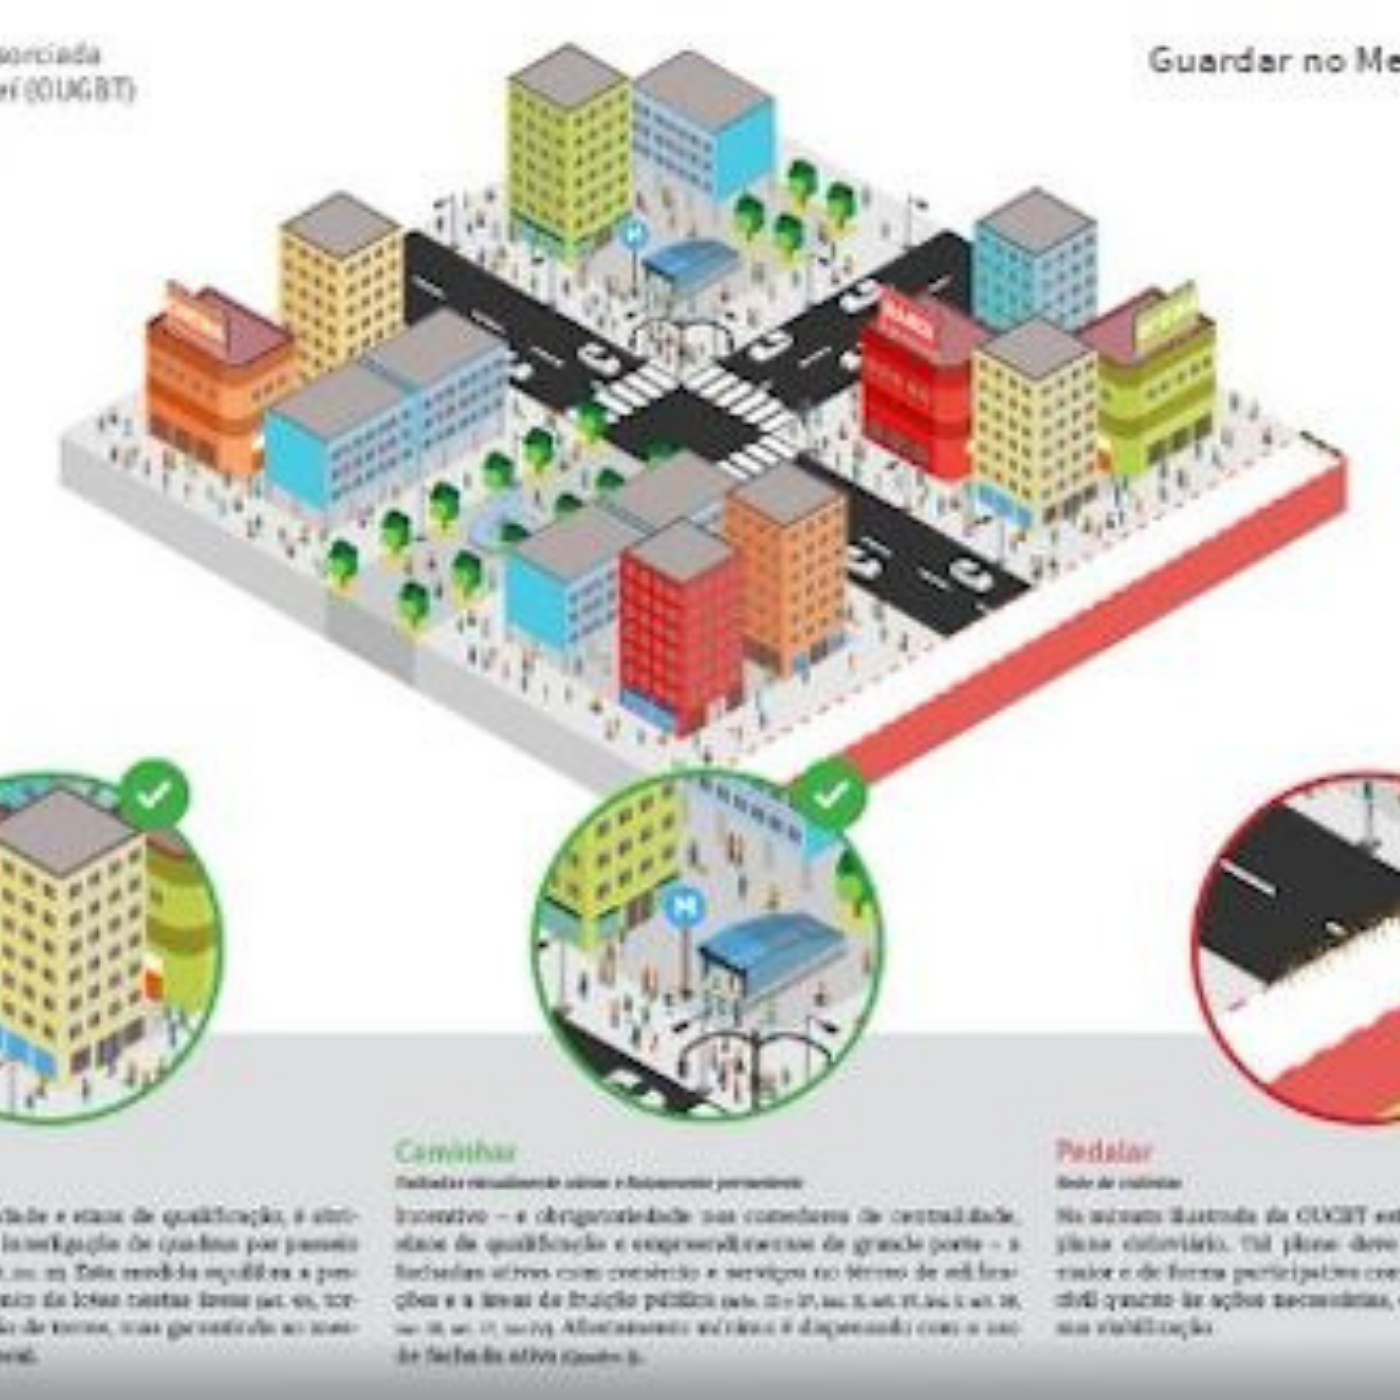 Arch Daily: Análise sobre legislação urbana e corredores de transporte nas grandes cidades brasileiras